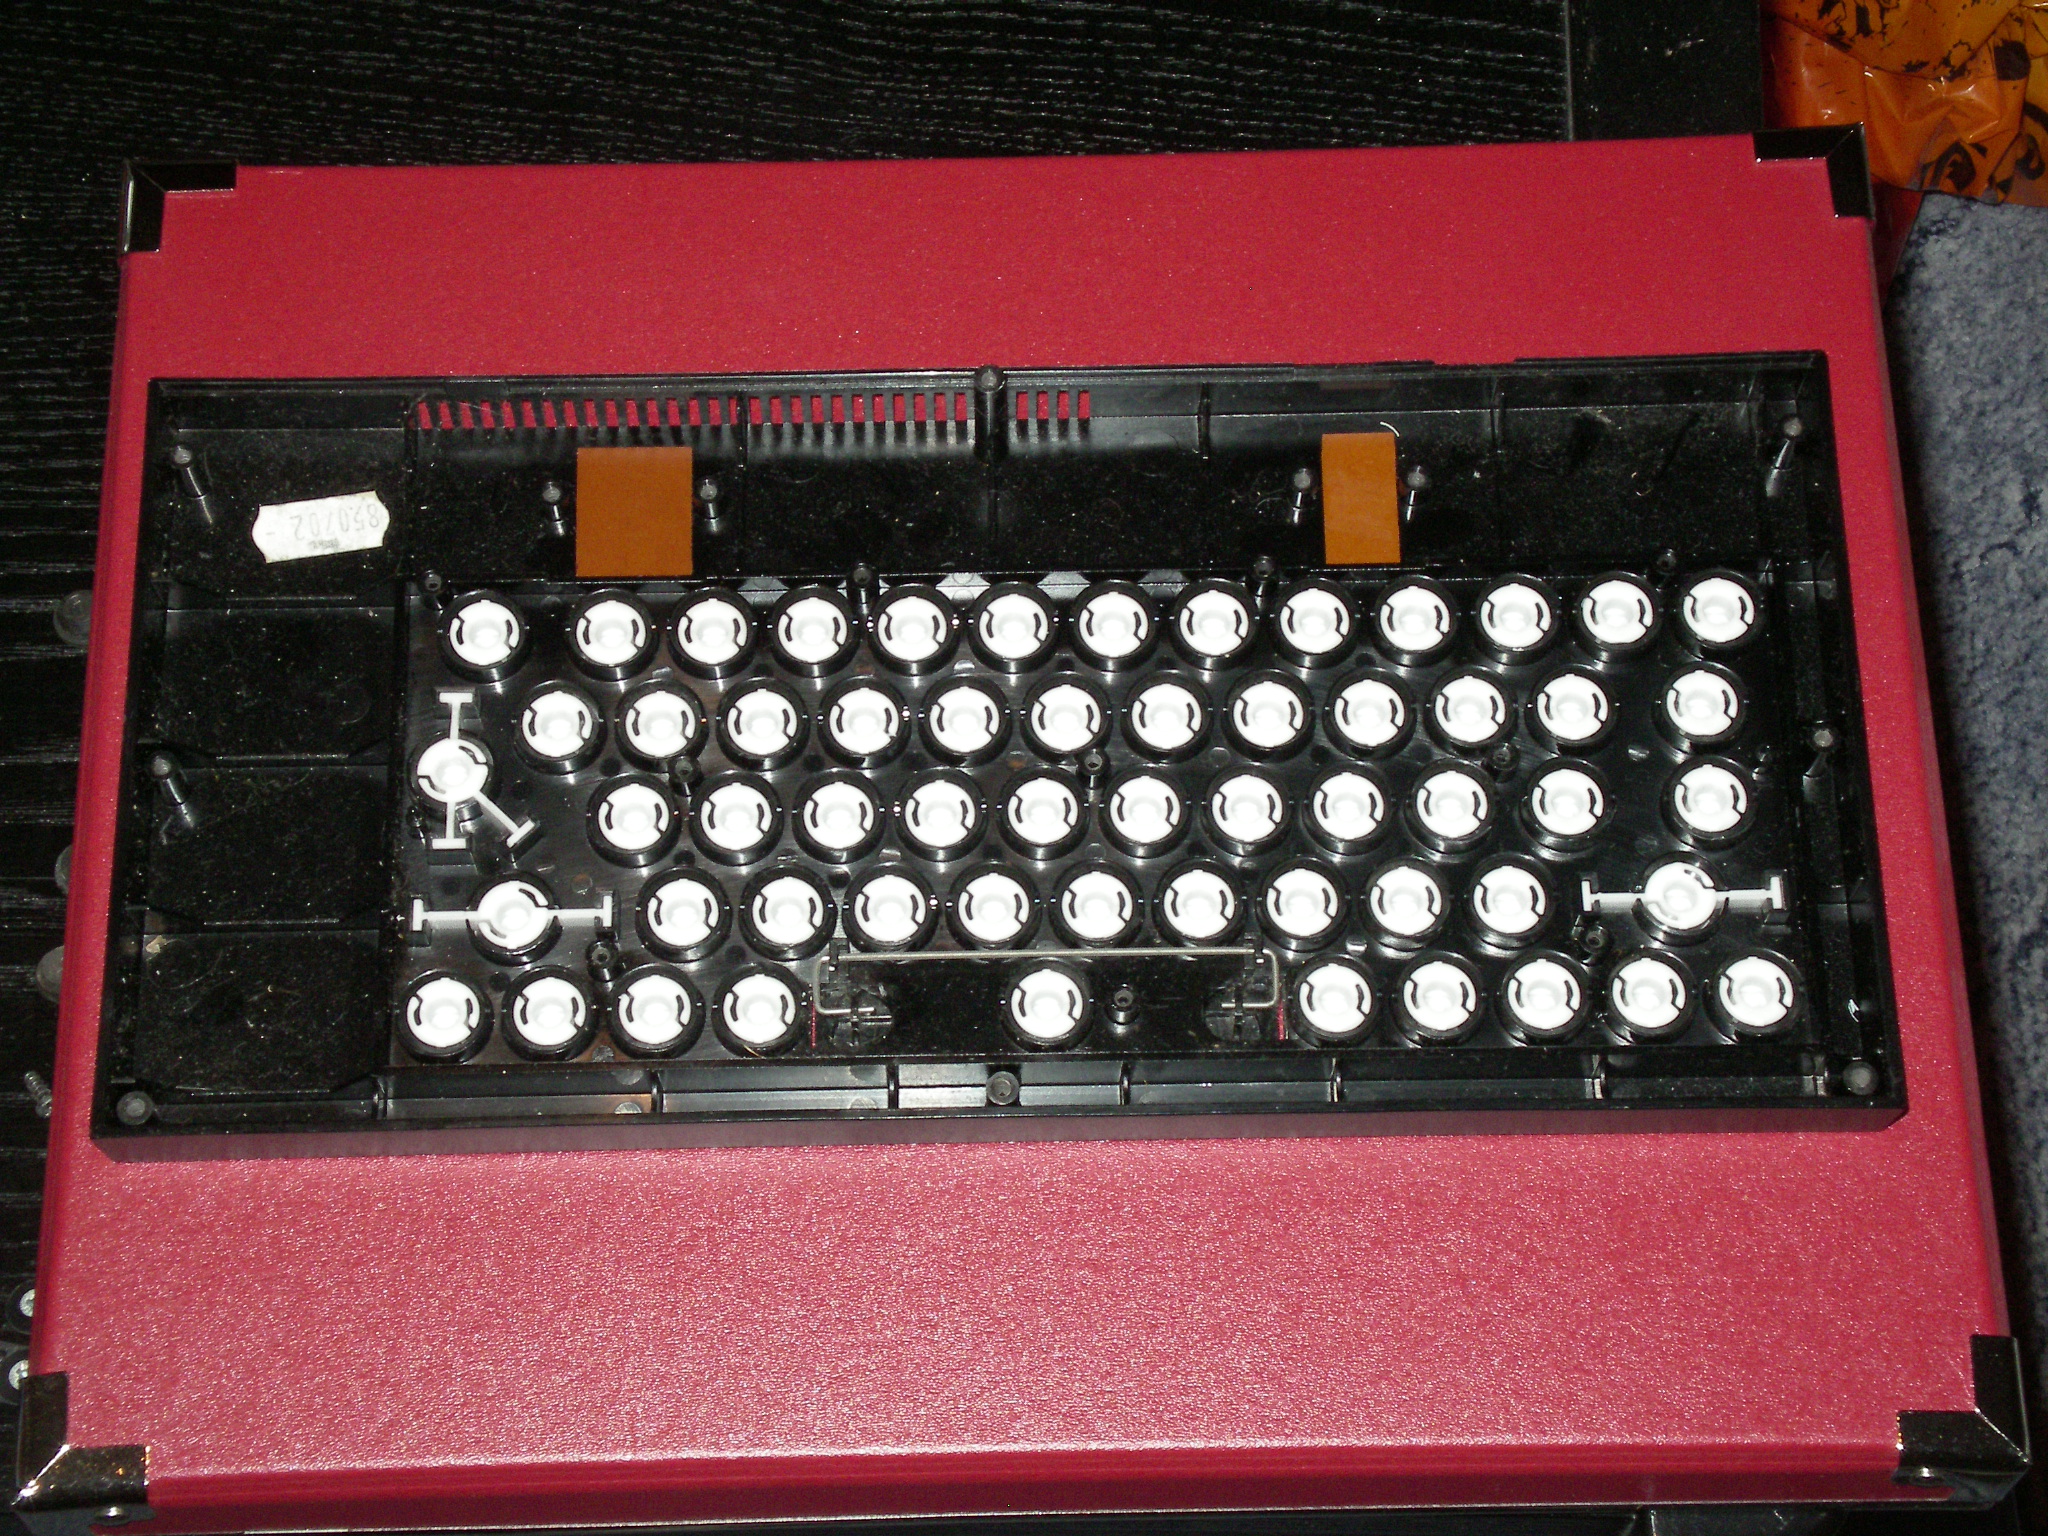 keyboard membrane for zx spectrum